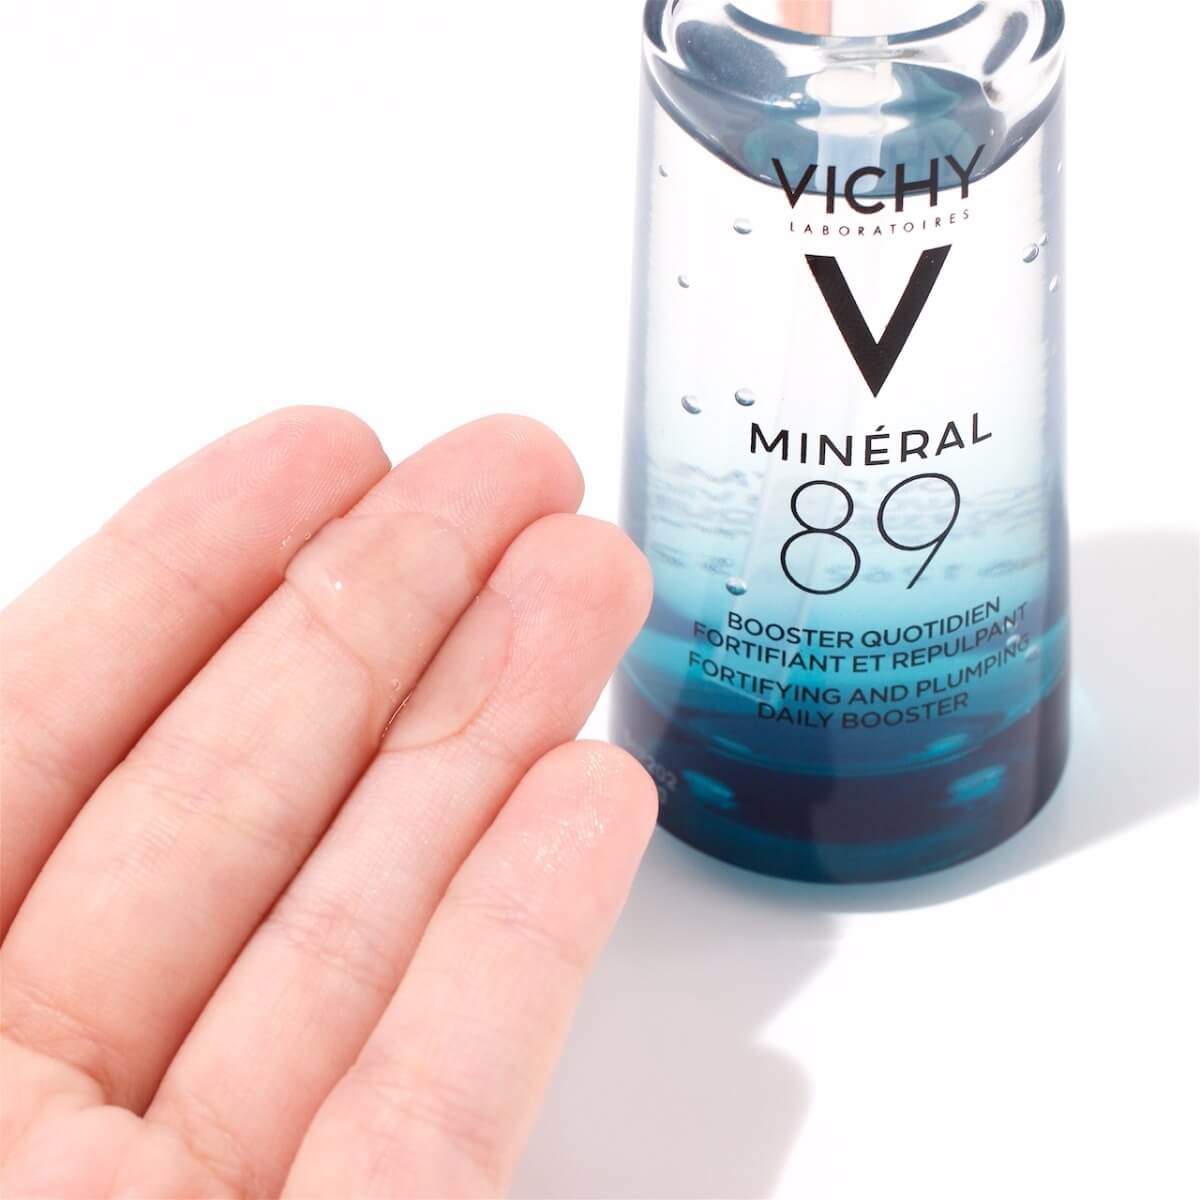 เนื้อเซรั่ม VICHY Mineral 89 Serum